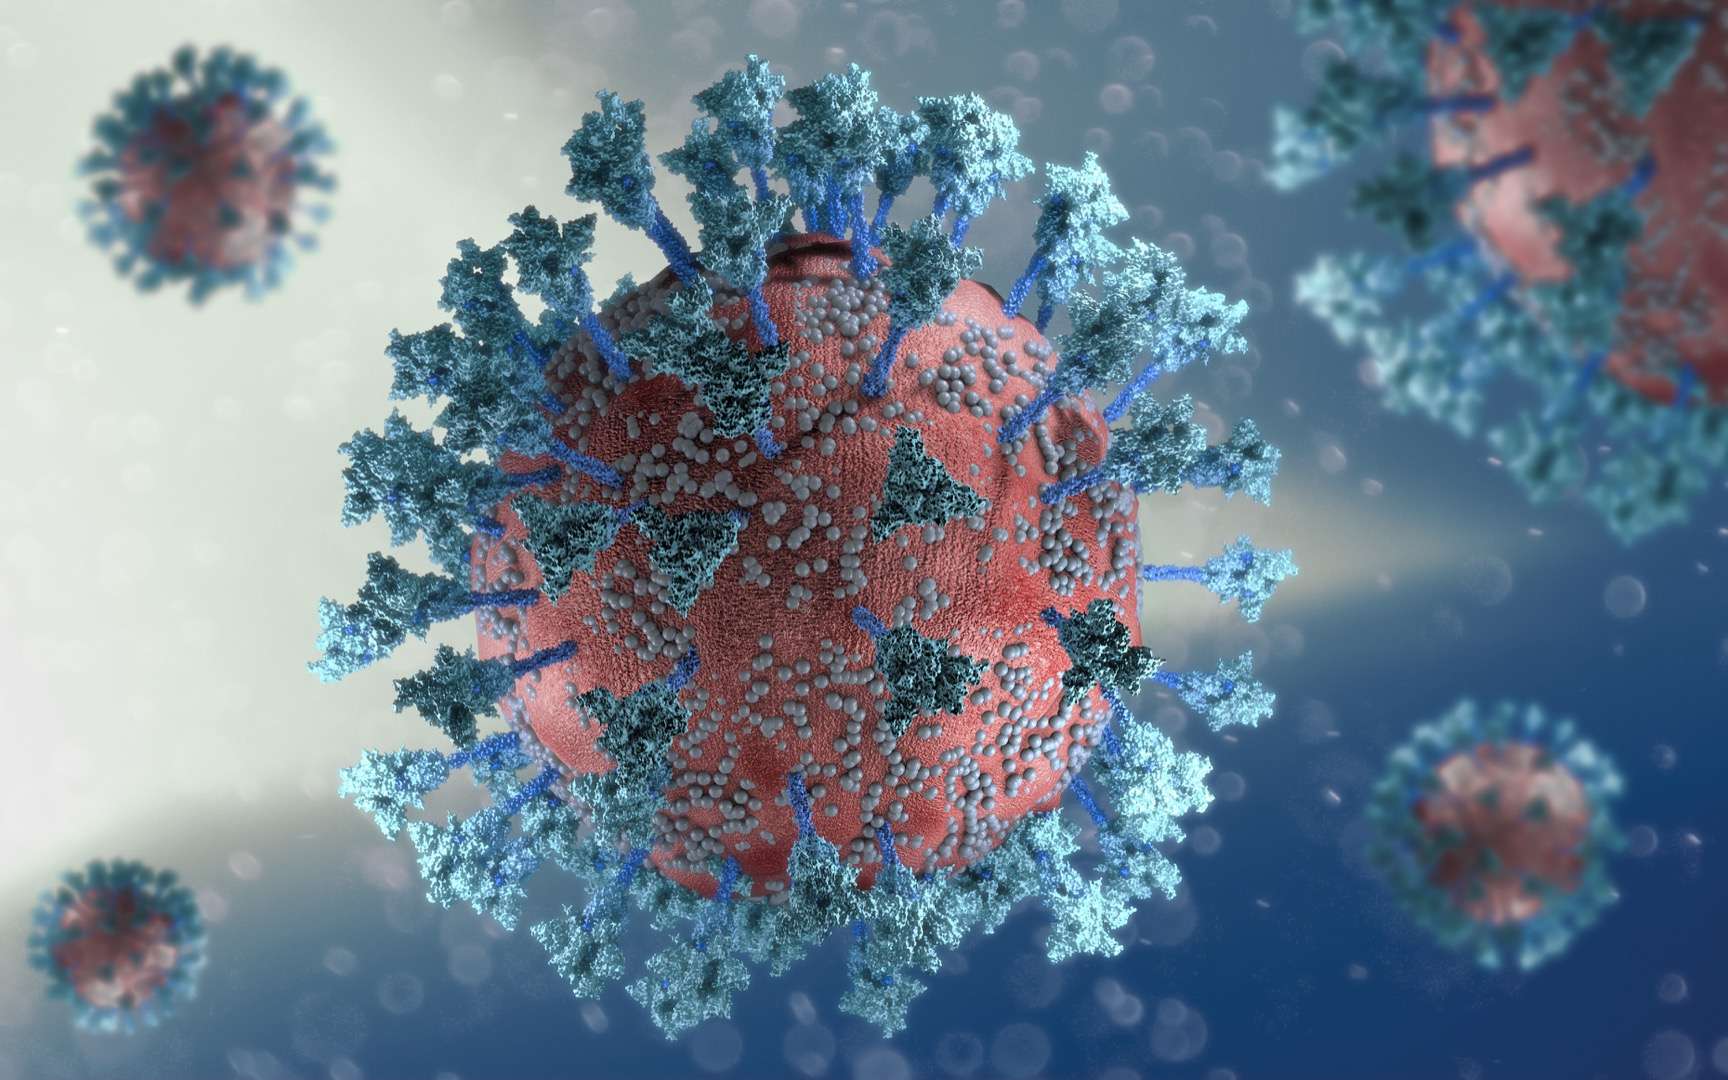 Le virus devrait continuer à évoluer mais être moins dangereux. © Naeblys, Adobe Stock